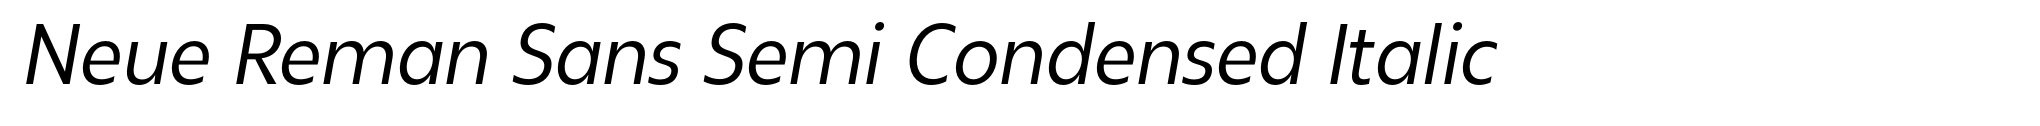 Neue Reman Sans Semi Condensed Italic image